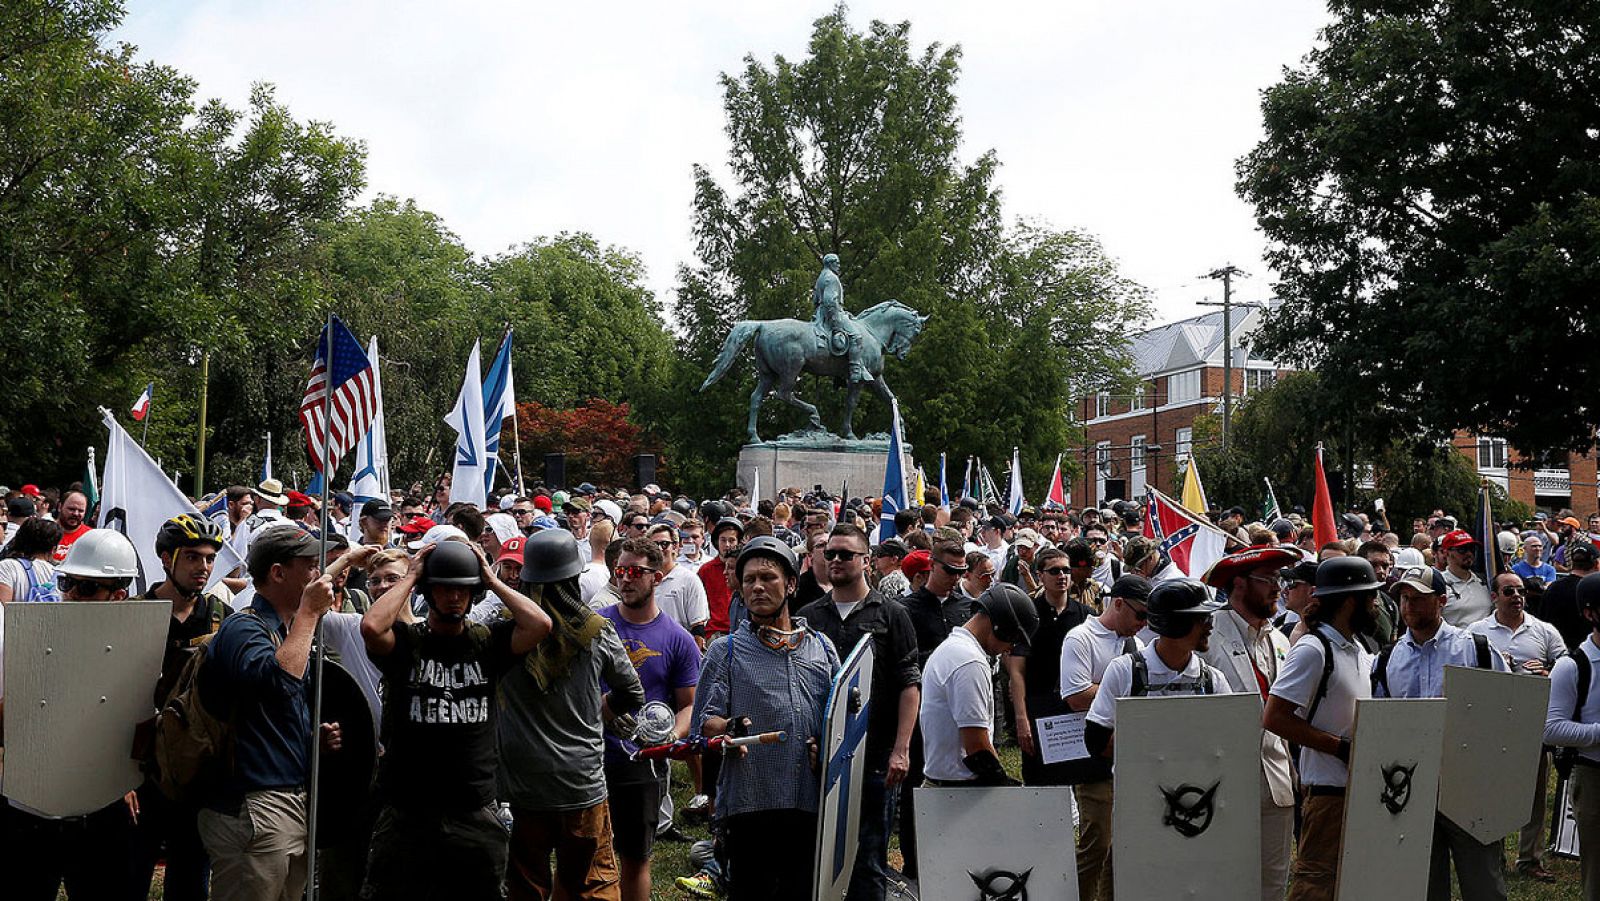 Imagen de la concentración racista frente a la estatua del general confederado Robert E. Lee en Charlottesville, Virginia. Los manifestantes portan banderas, escudos y símbolos de varios grupos de extrema derecha